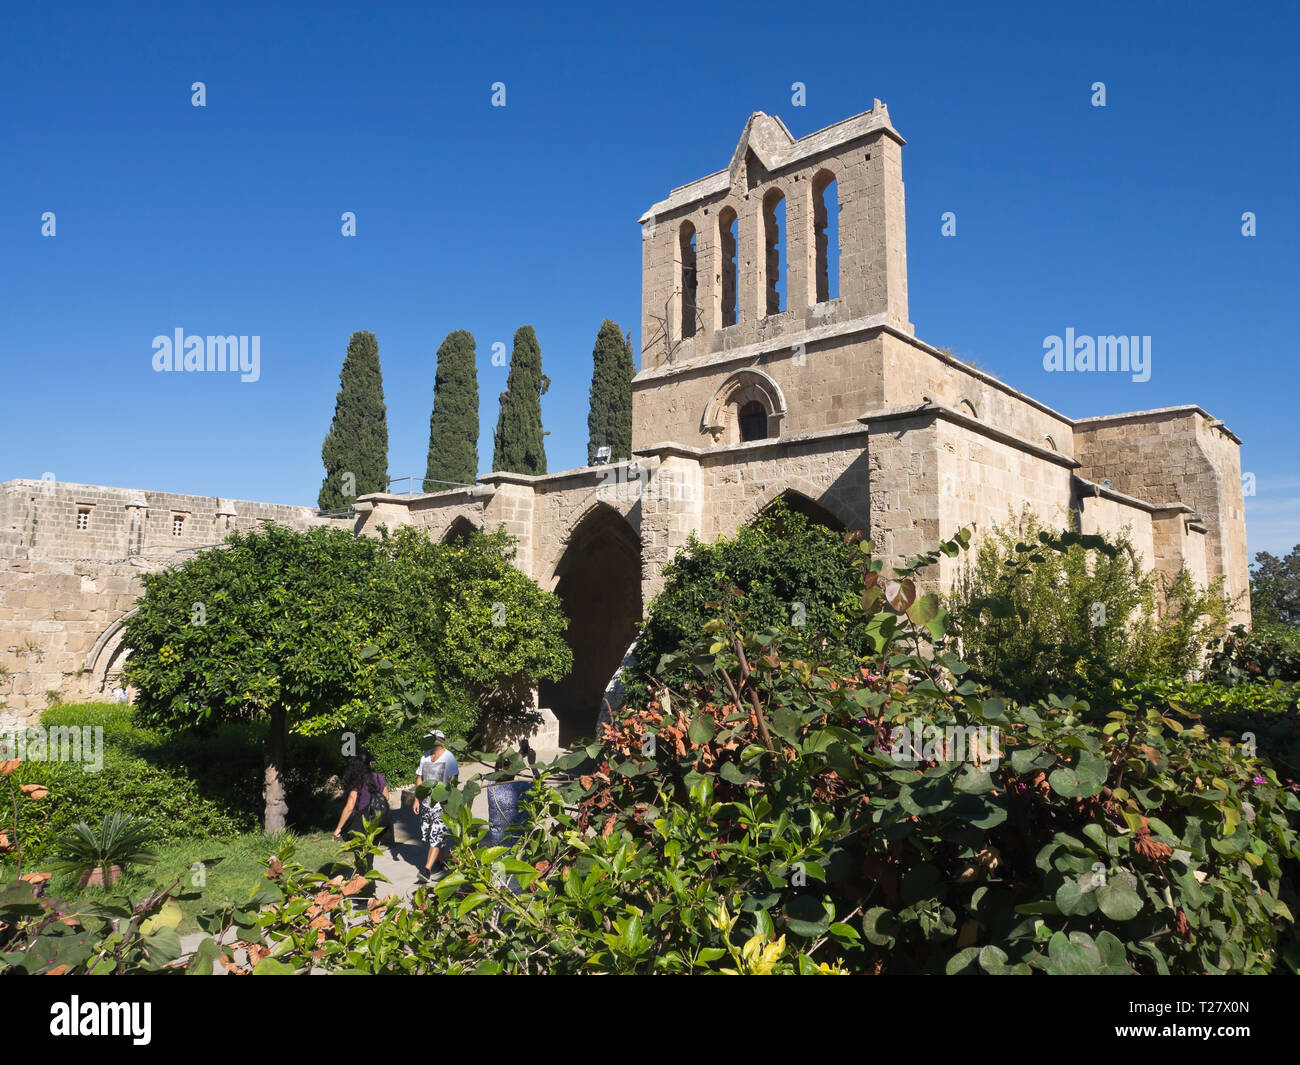 La Abadía de Bellapais una atracción turística en el norte de Chipre con ruinas góticas, una hermosa iglesia ortodoxa y exuberante jardín Foto de stock